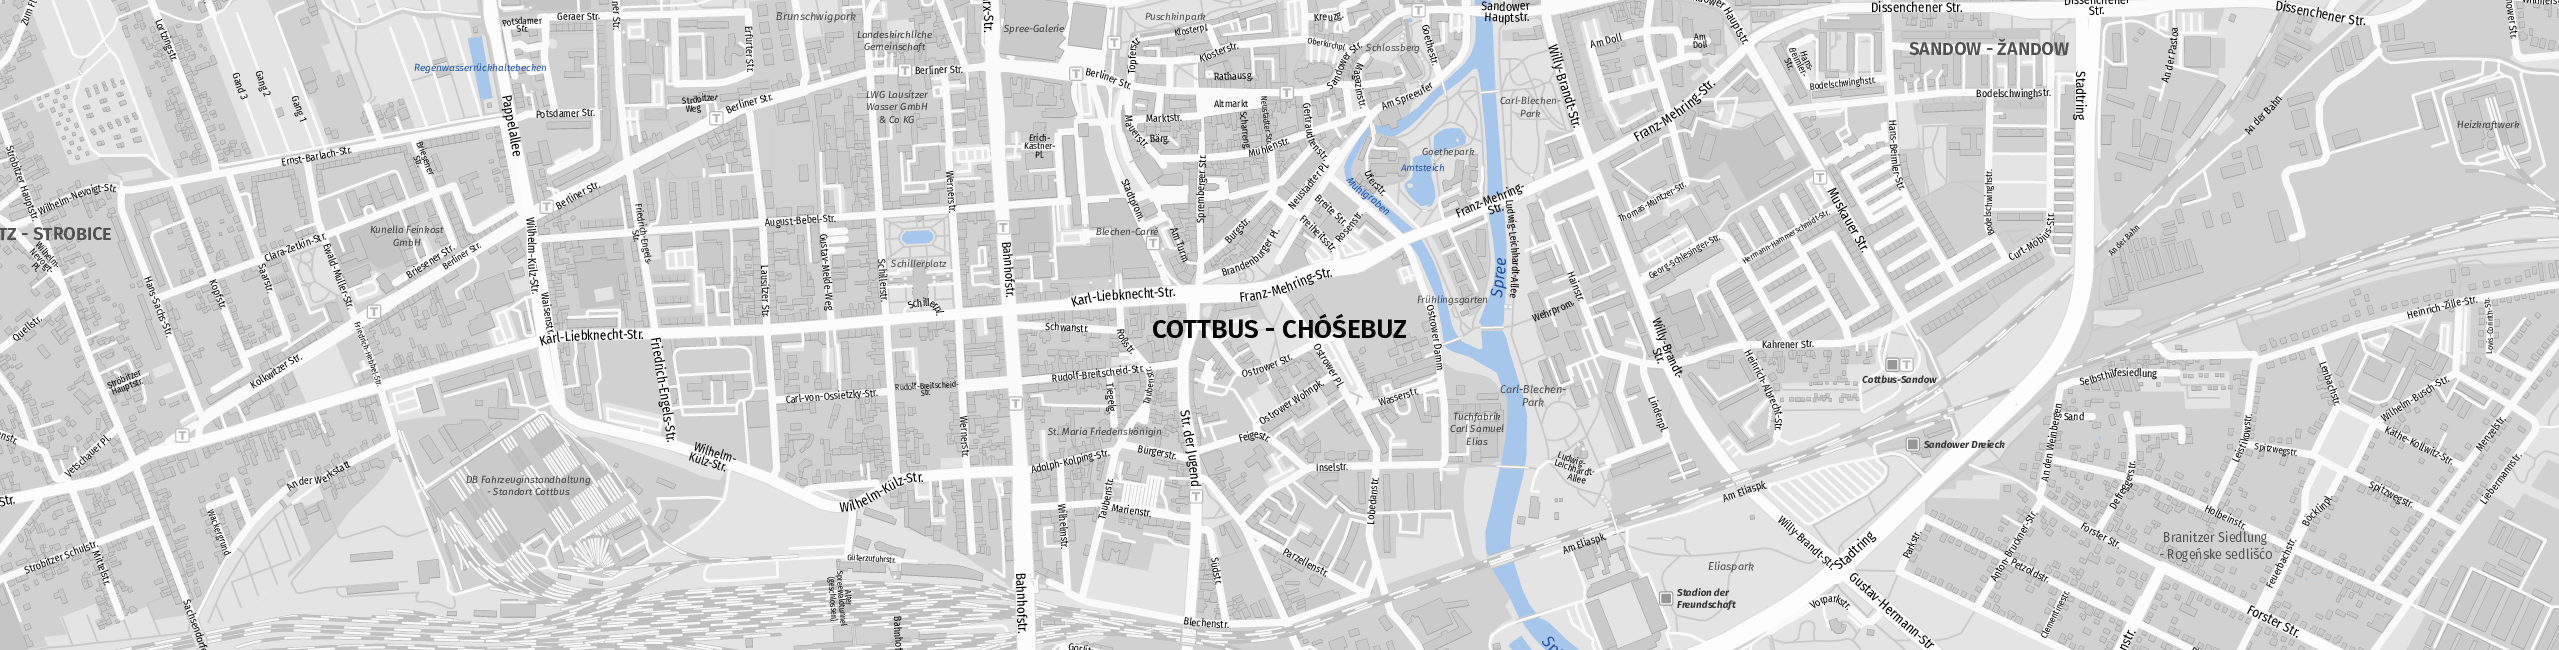 Stadtplan Cottbus zum Downloaden.